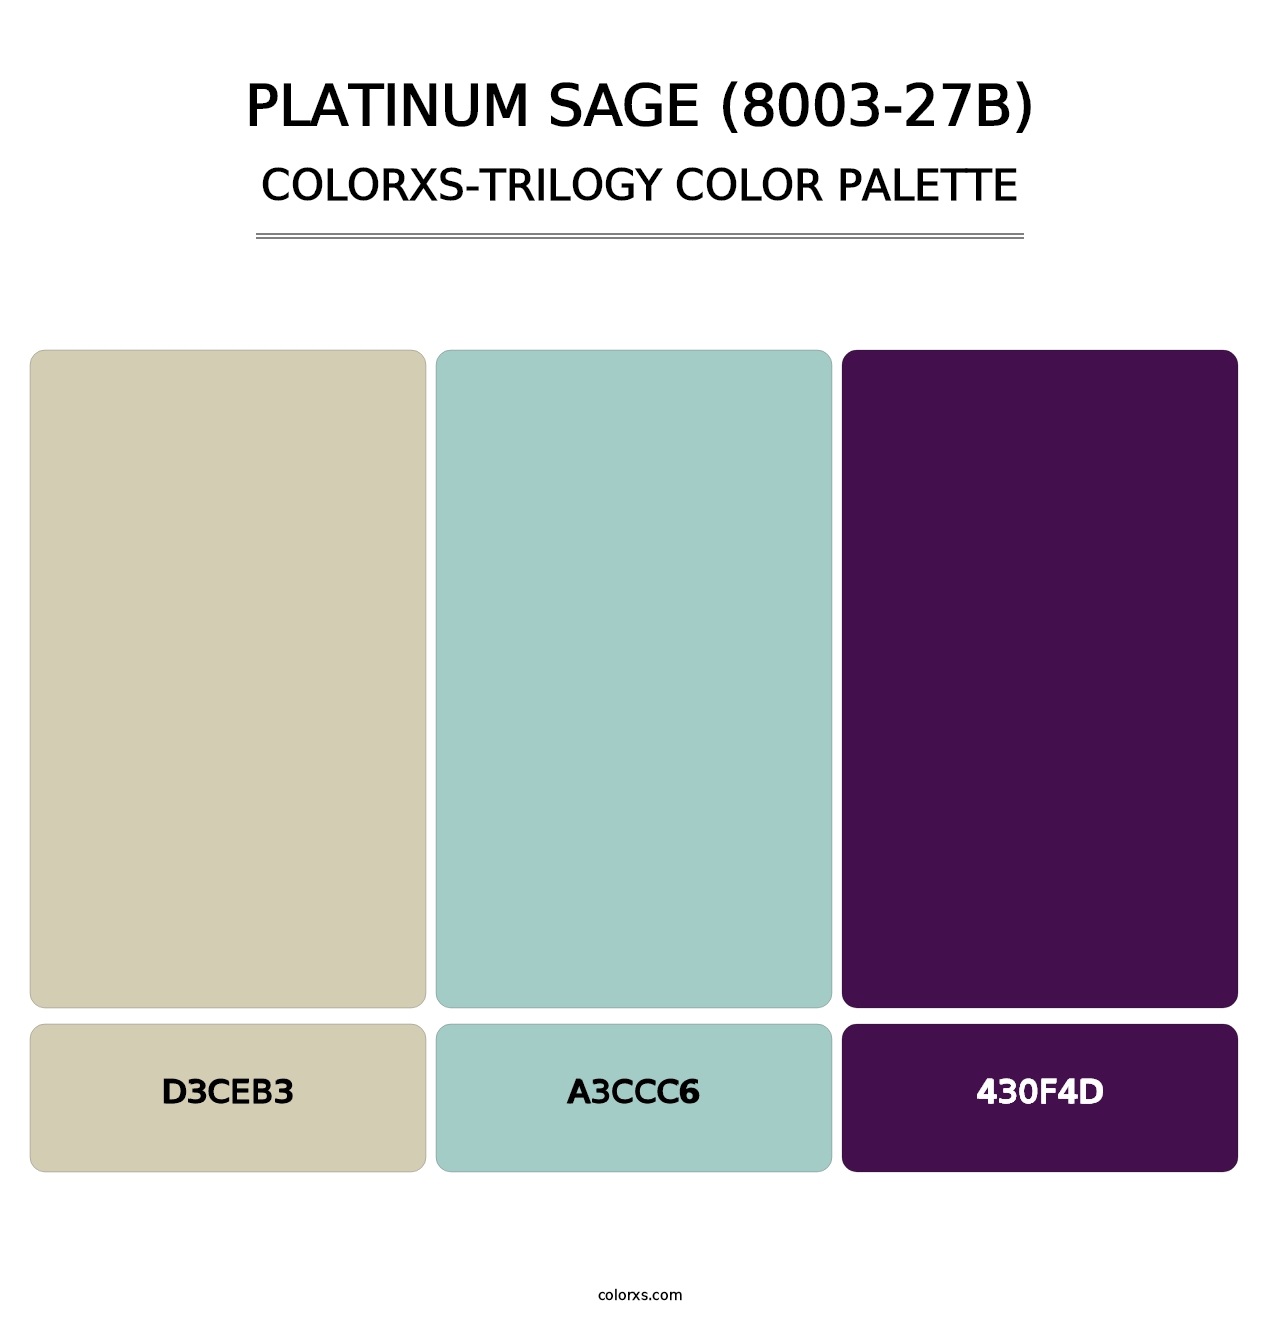 Platinum Sage (8003-27B) - Colorxs Trilogy Palette